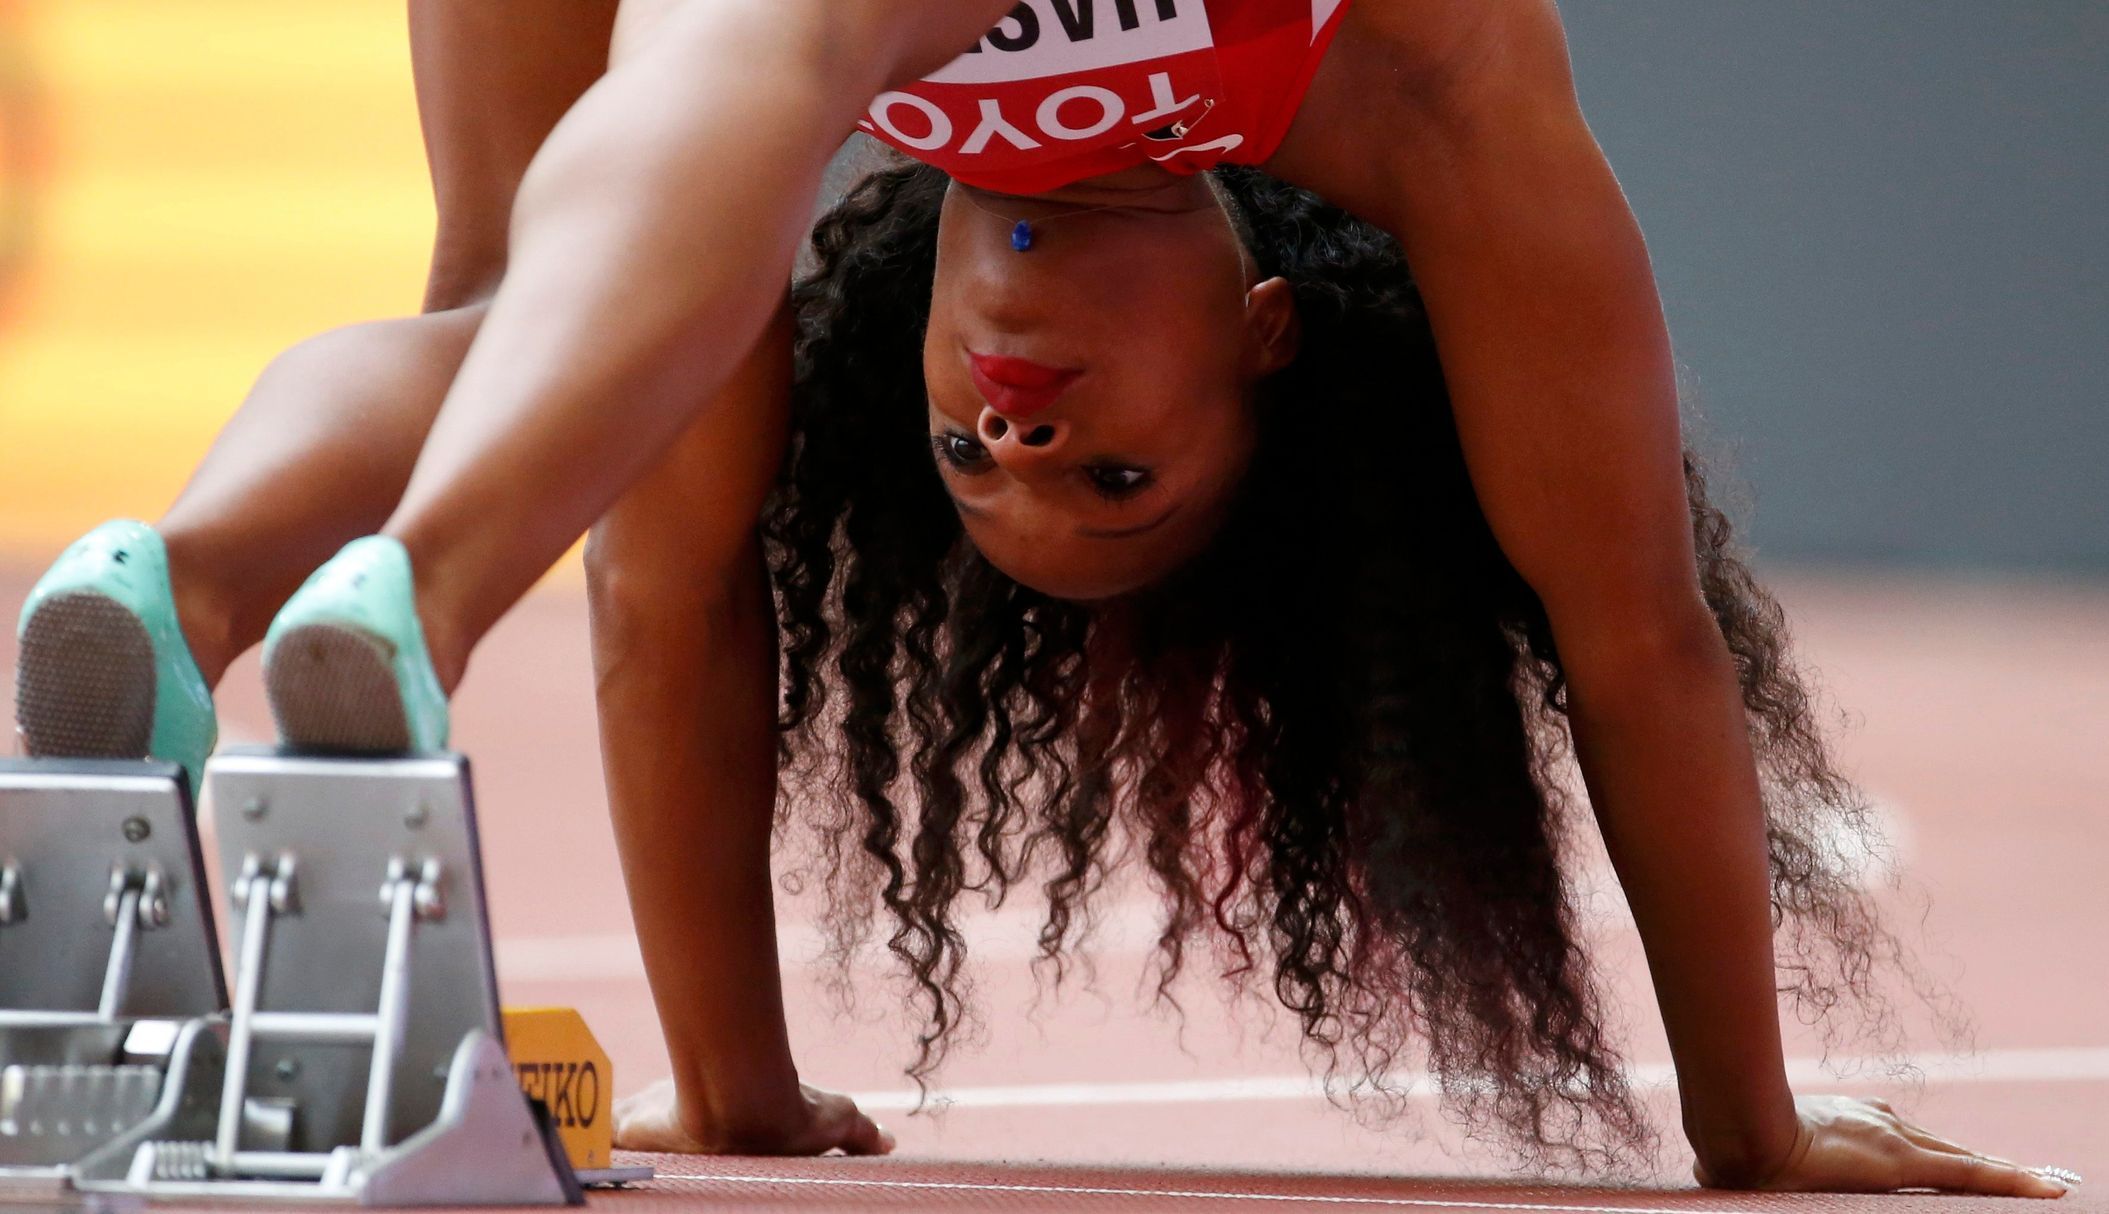 MS v atletice 2015, 400 m př. Ž:  Natasha Hastingsová, USA